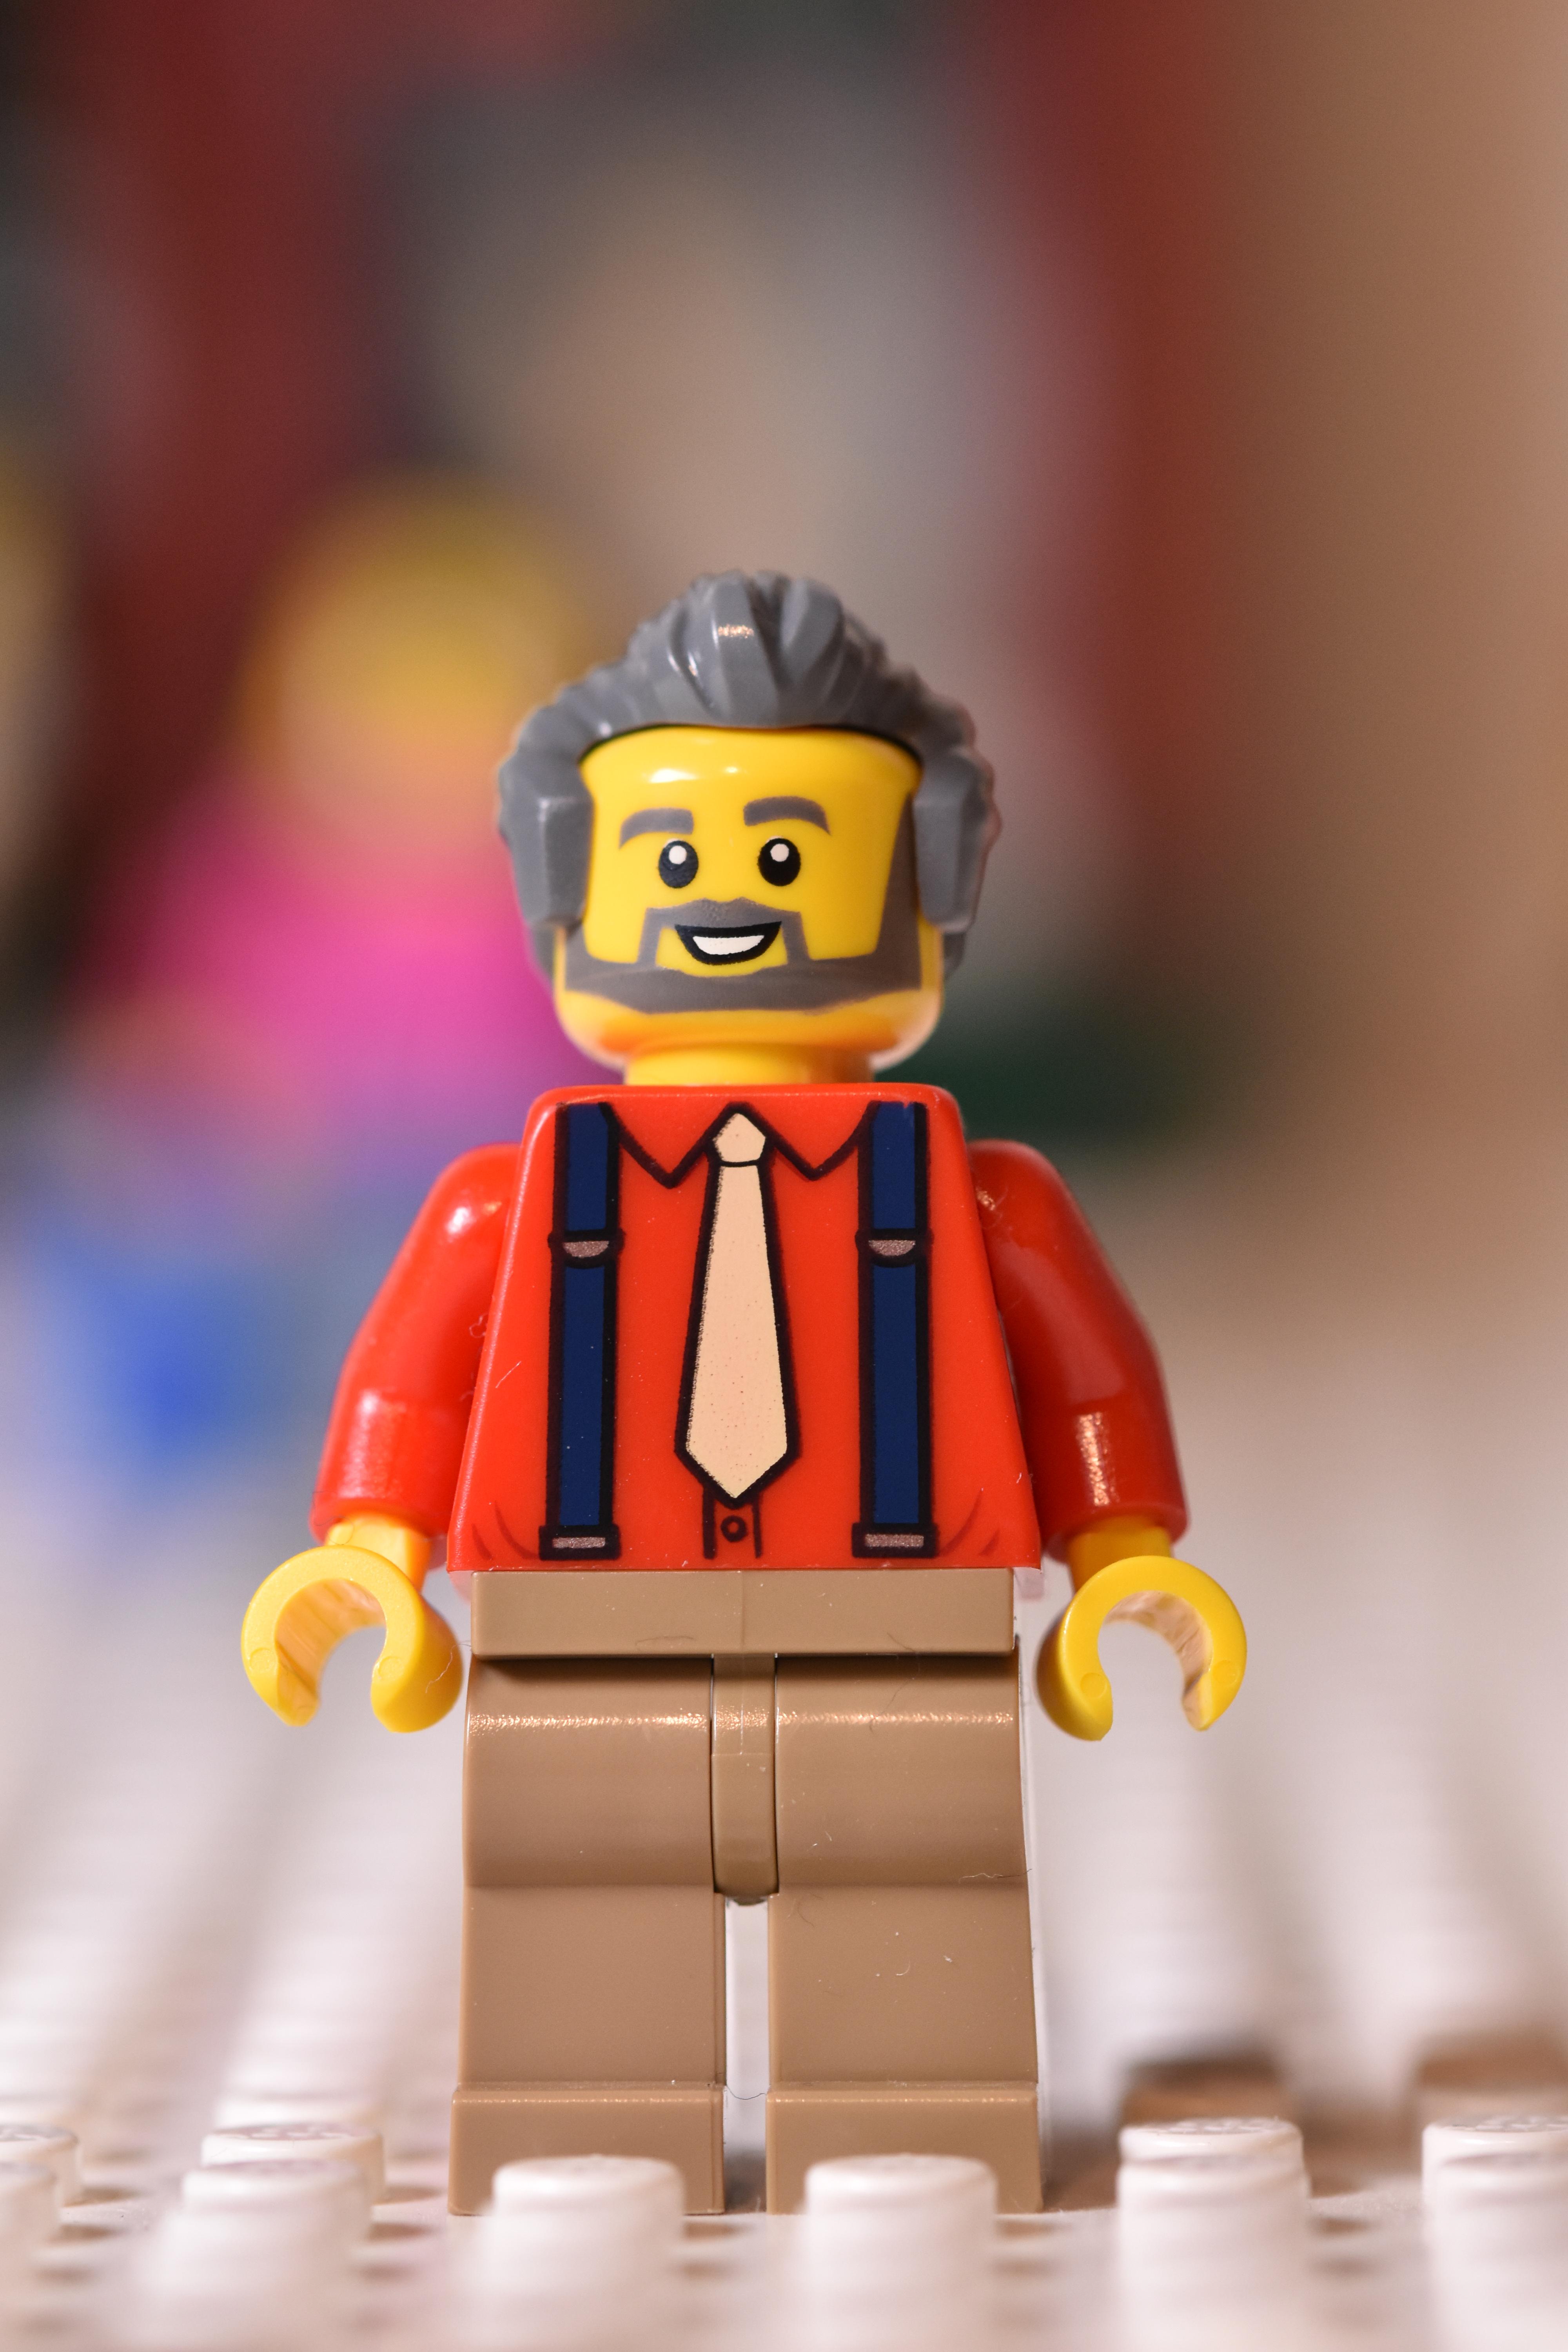 Lego minifigure shopkeeper